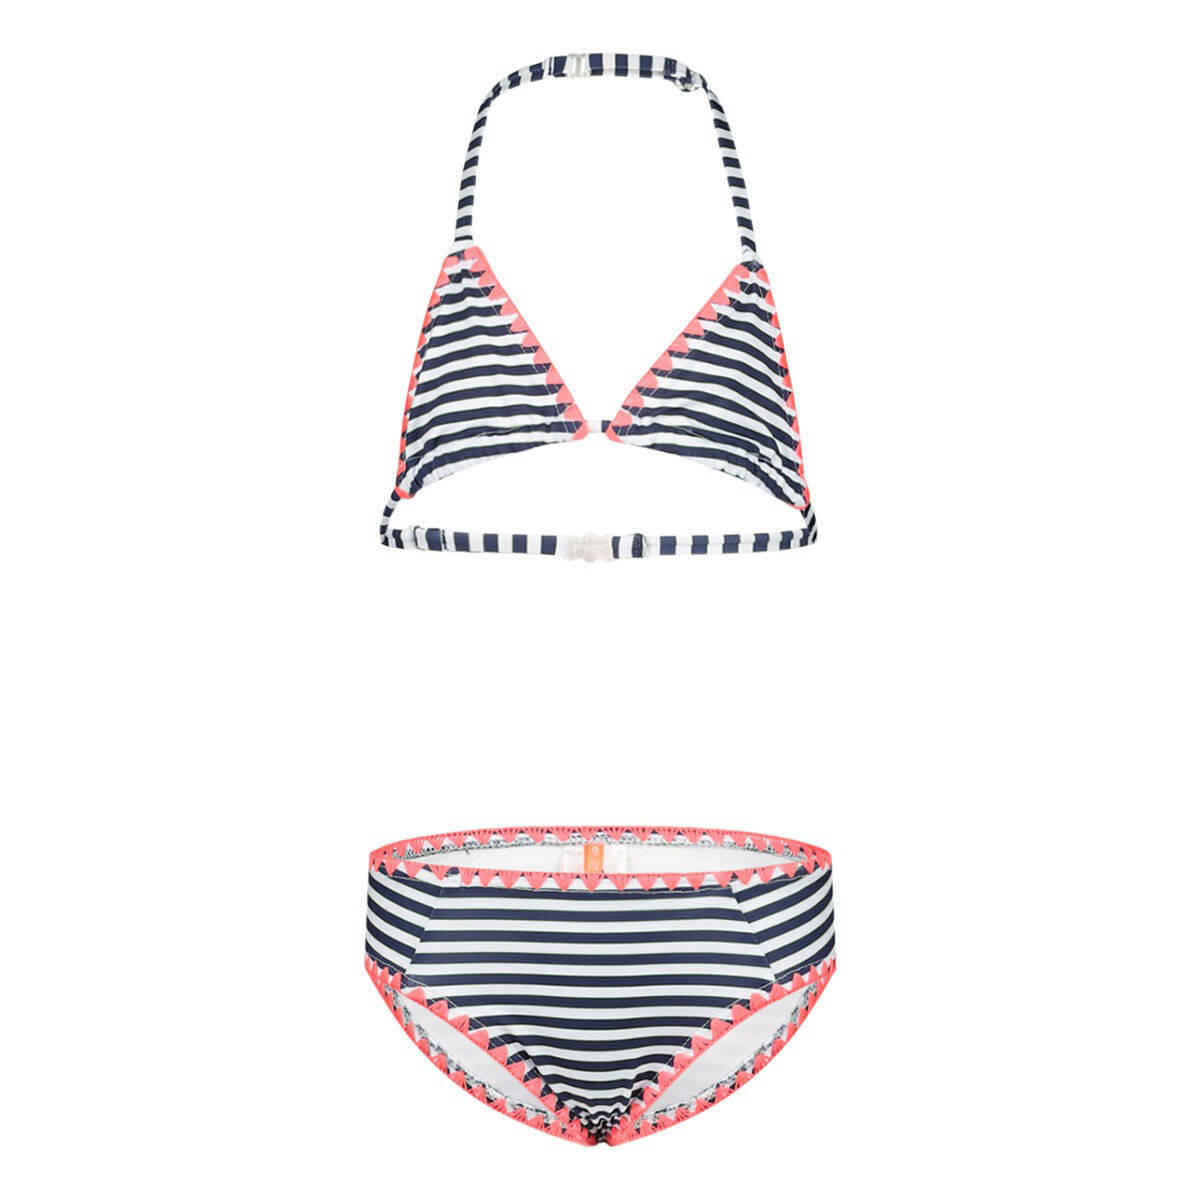 Verantwoordelijk persoon Internationale Harnas 29FT gestreepte triangel bikini donkerblauw/wit | kleertjes.com